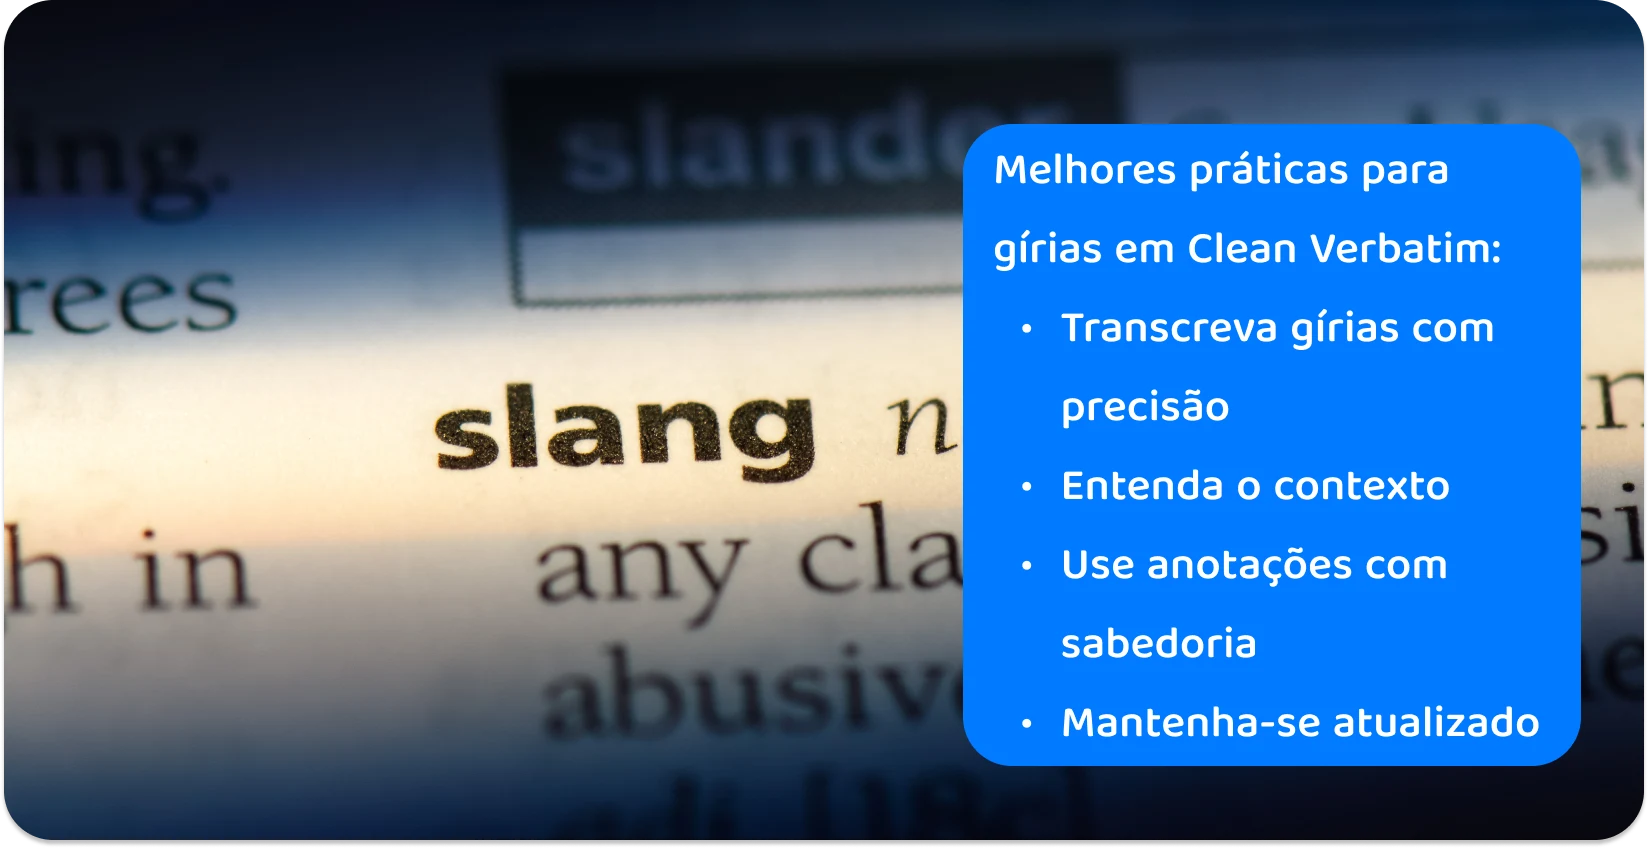 Close-up sobre a palavra "gíria" em um dicionário, destacando a precisão necessária nas práticas de transcrição para o vernáculo moderno.